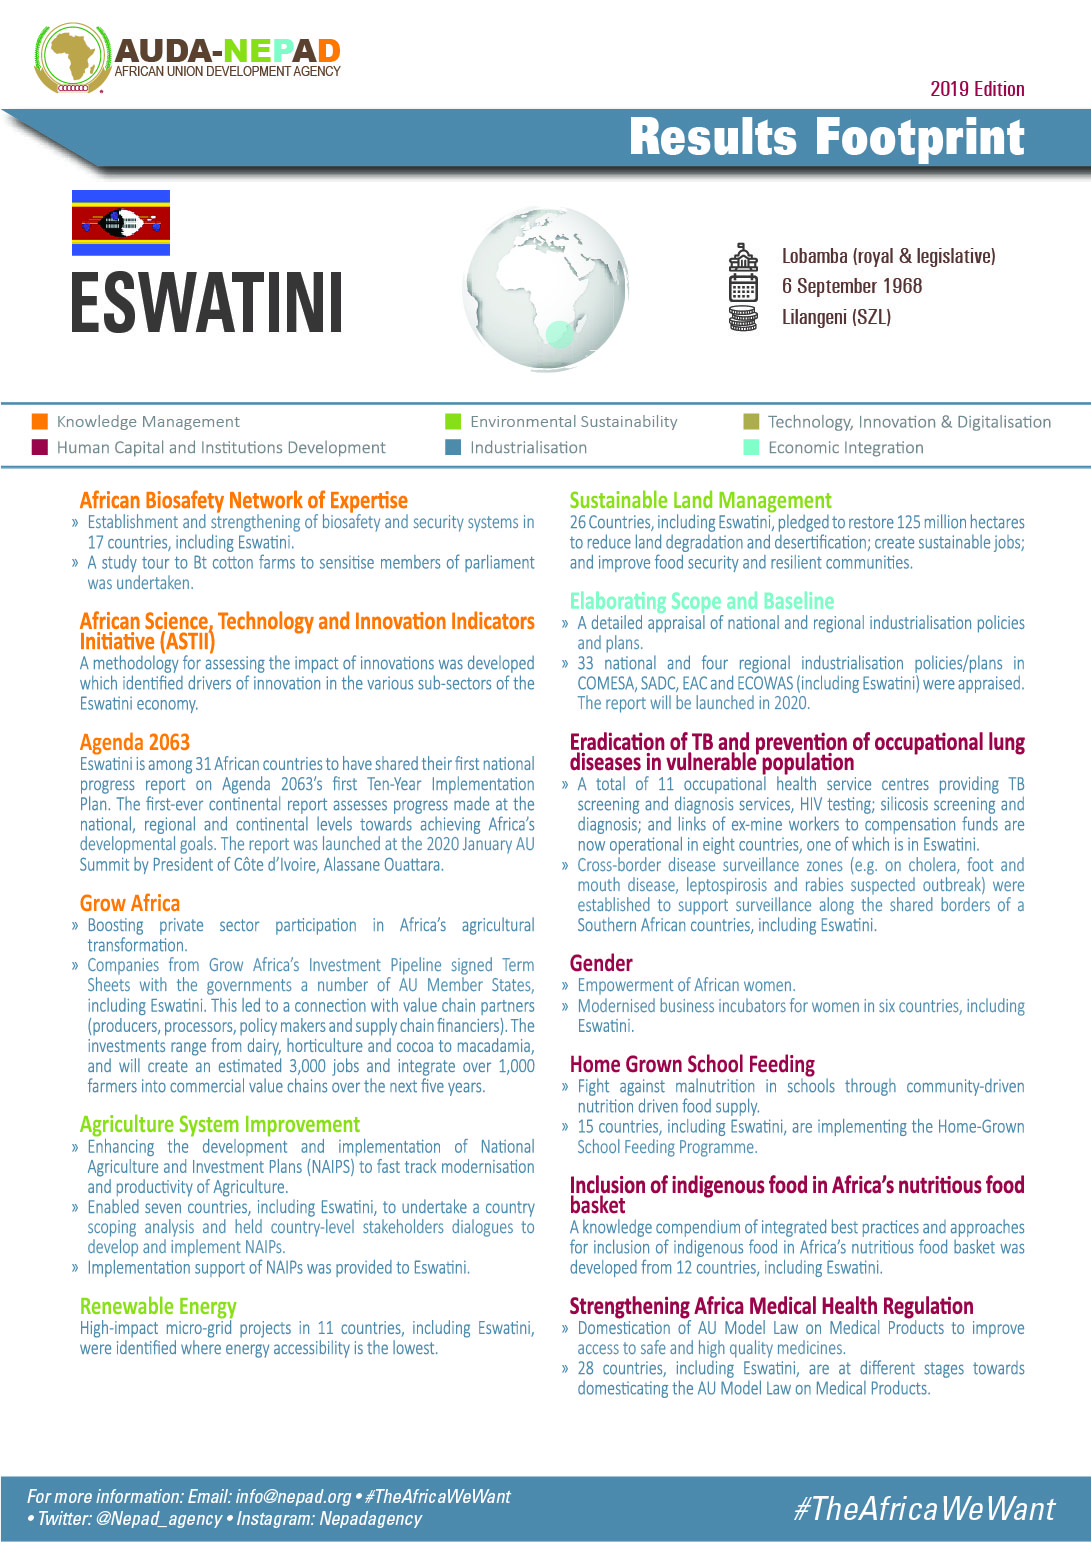 2019 AUDA-NEPAD Footprint: Country Profiles: Eswatini